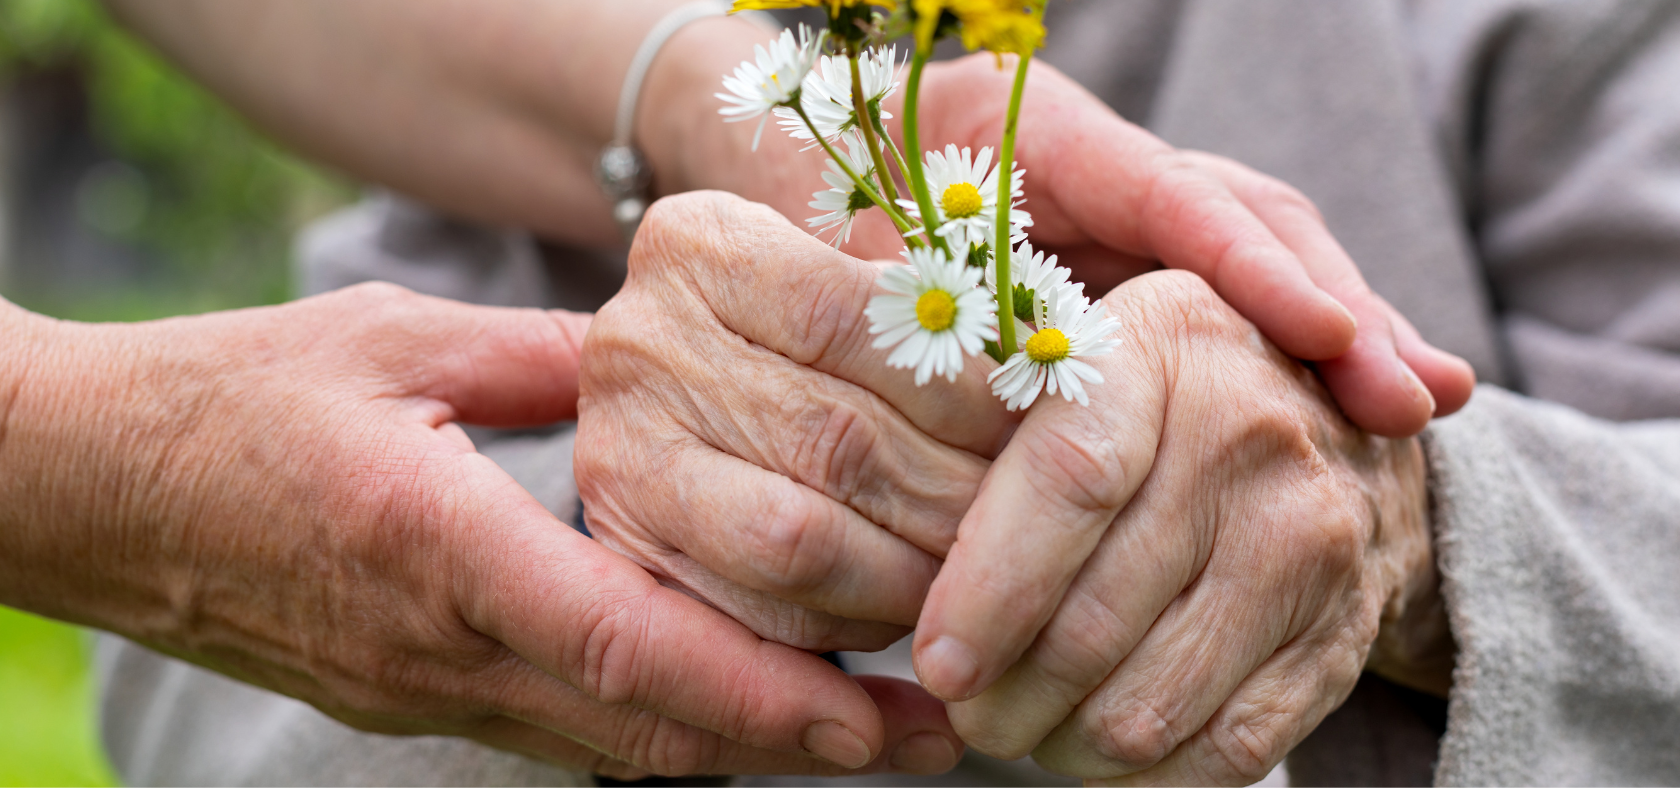 Hände einer älteren Person die Blumen halten, die von den Händen einer anderen Person berührt werden